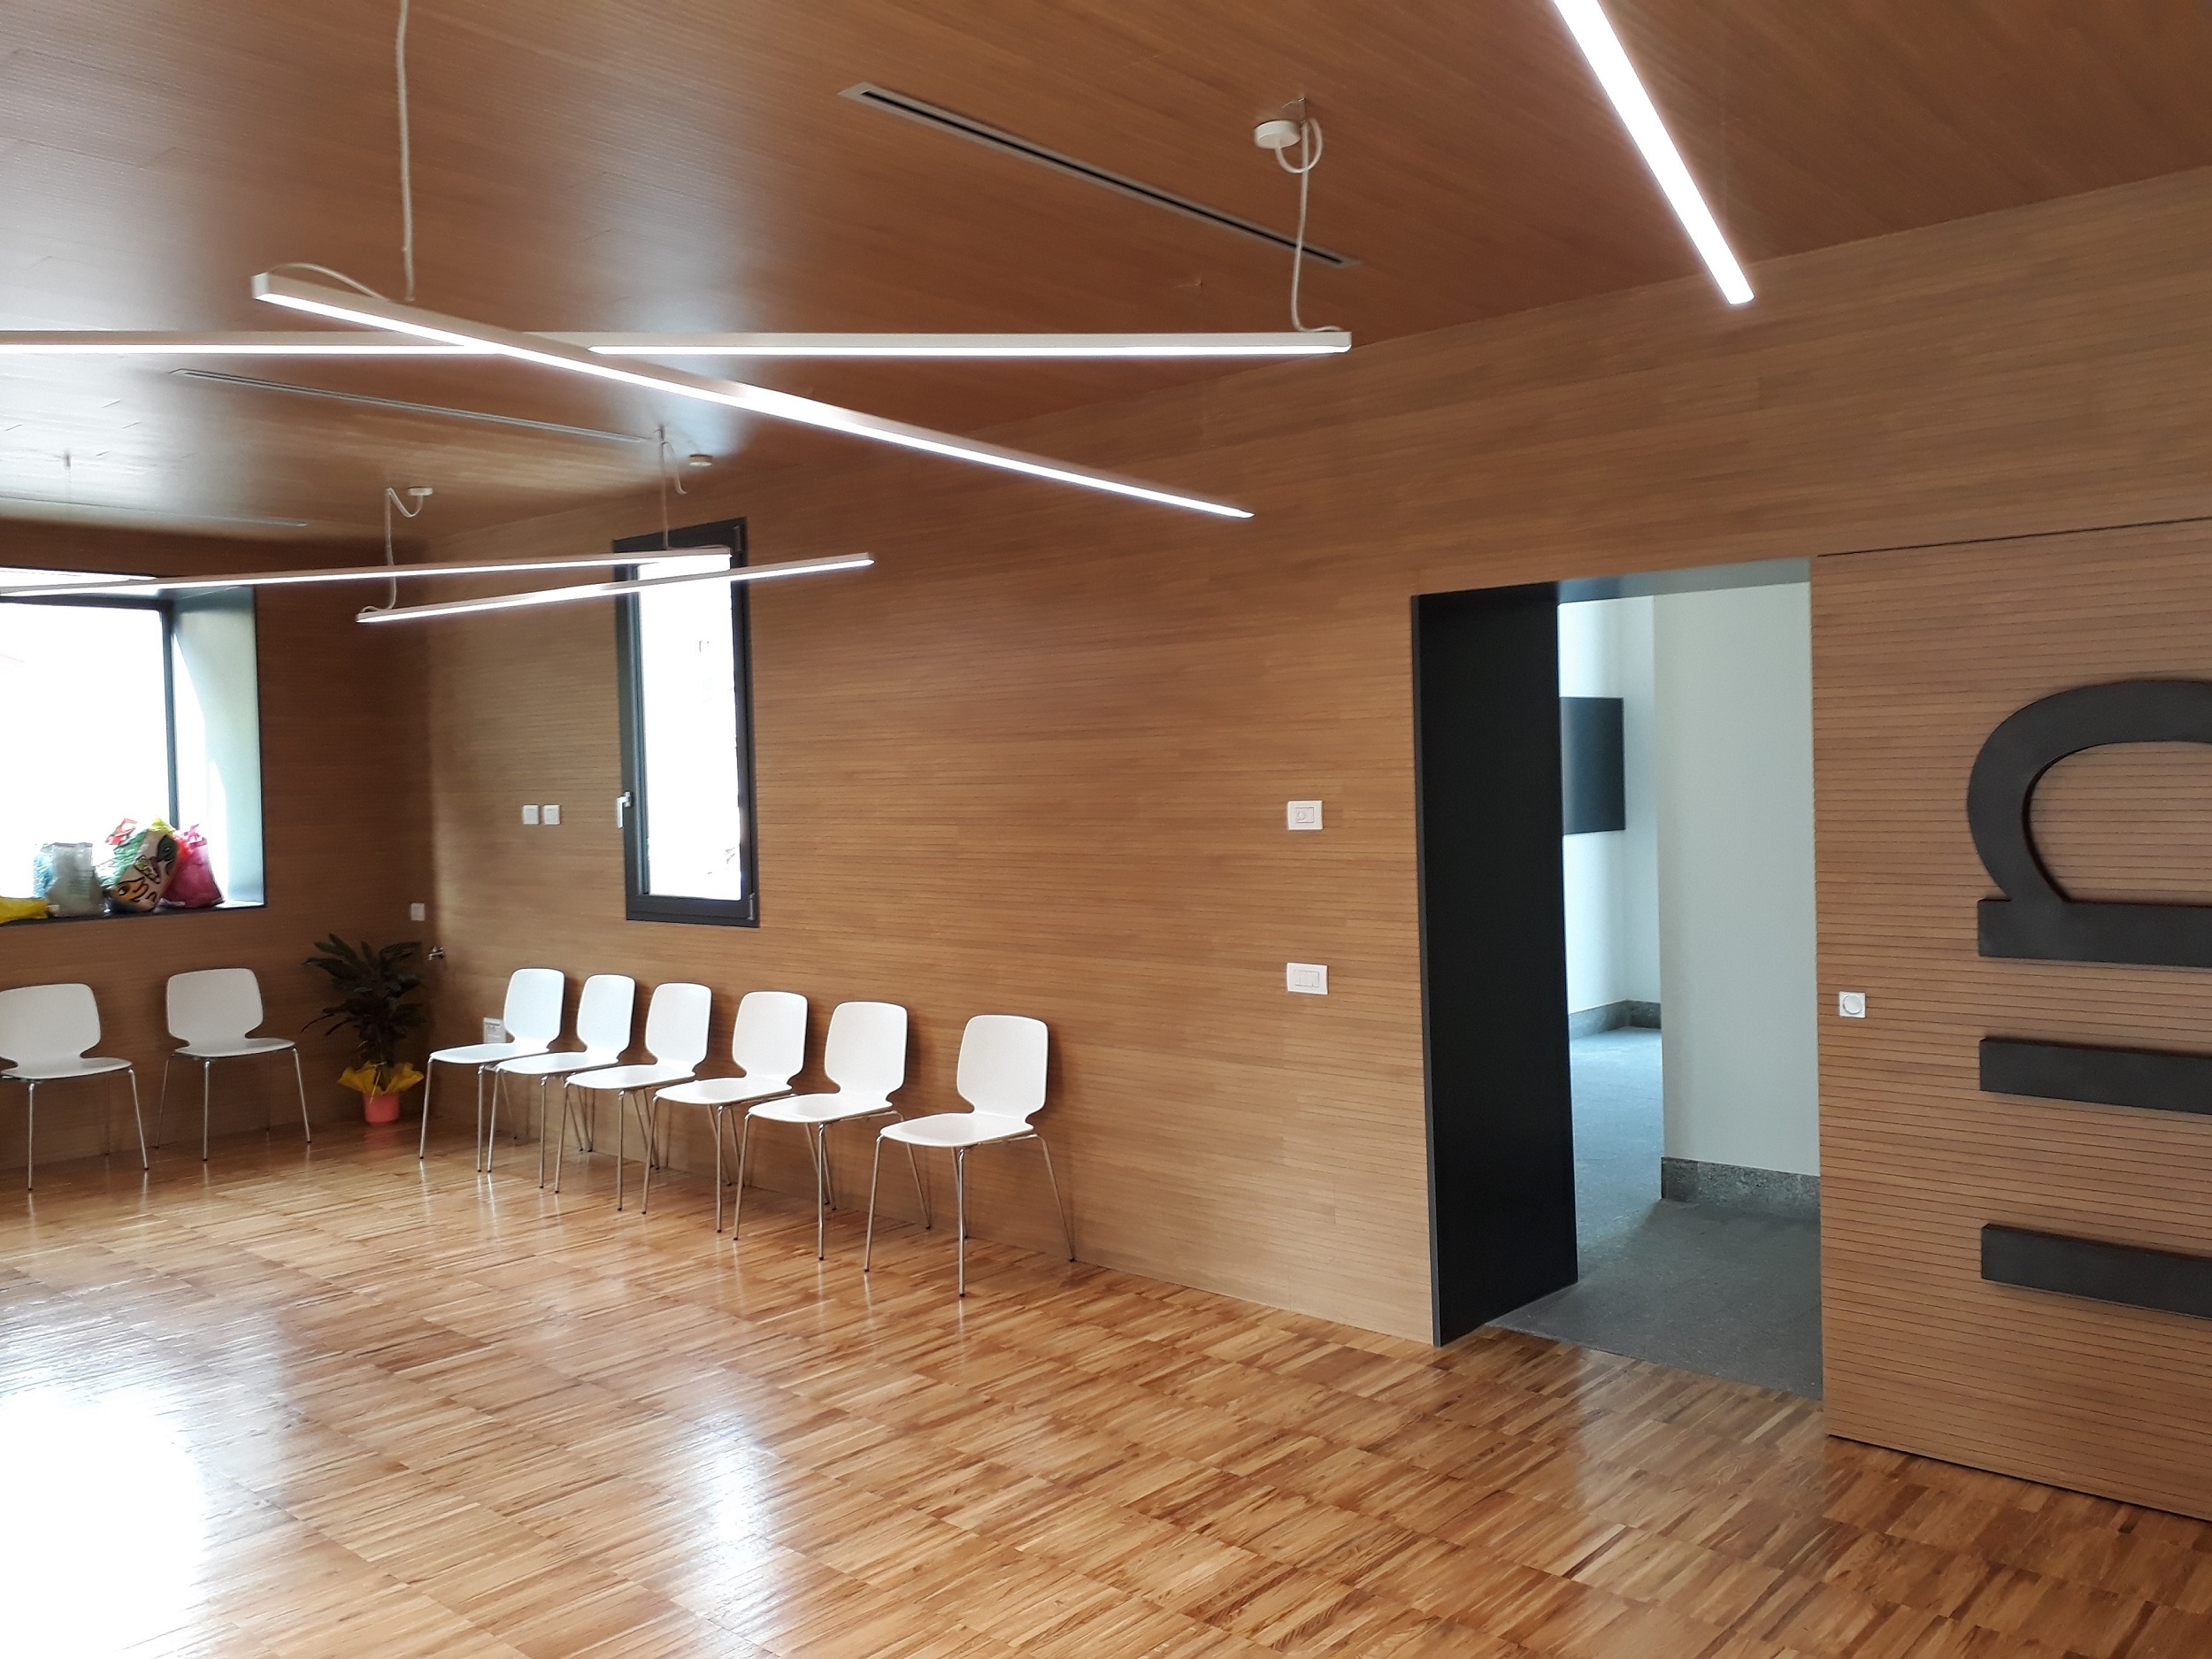 Wavin Italia è stata protagonista della ristrutturazione della Casa della Musica di Sondrio, con la realizzazione di un nuovo impianto di riscaldamento con pannelli radianti a soffitto e sistema per il trattamento dell’aria.